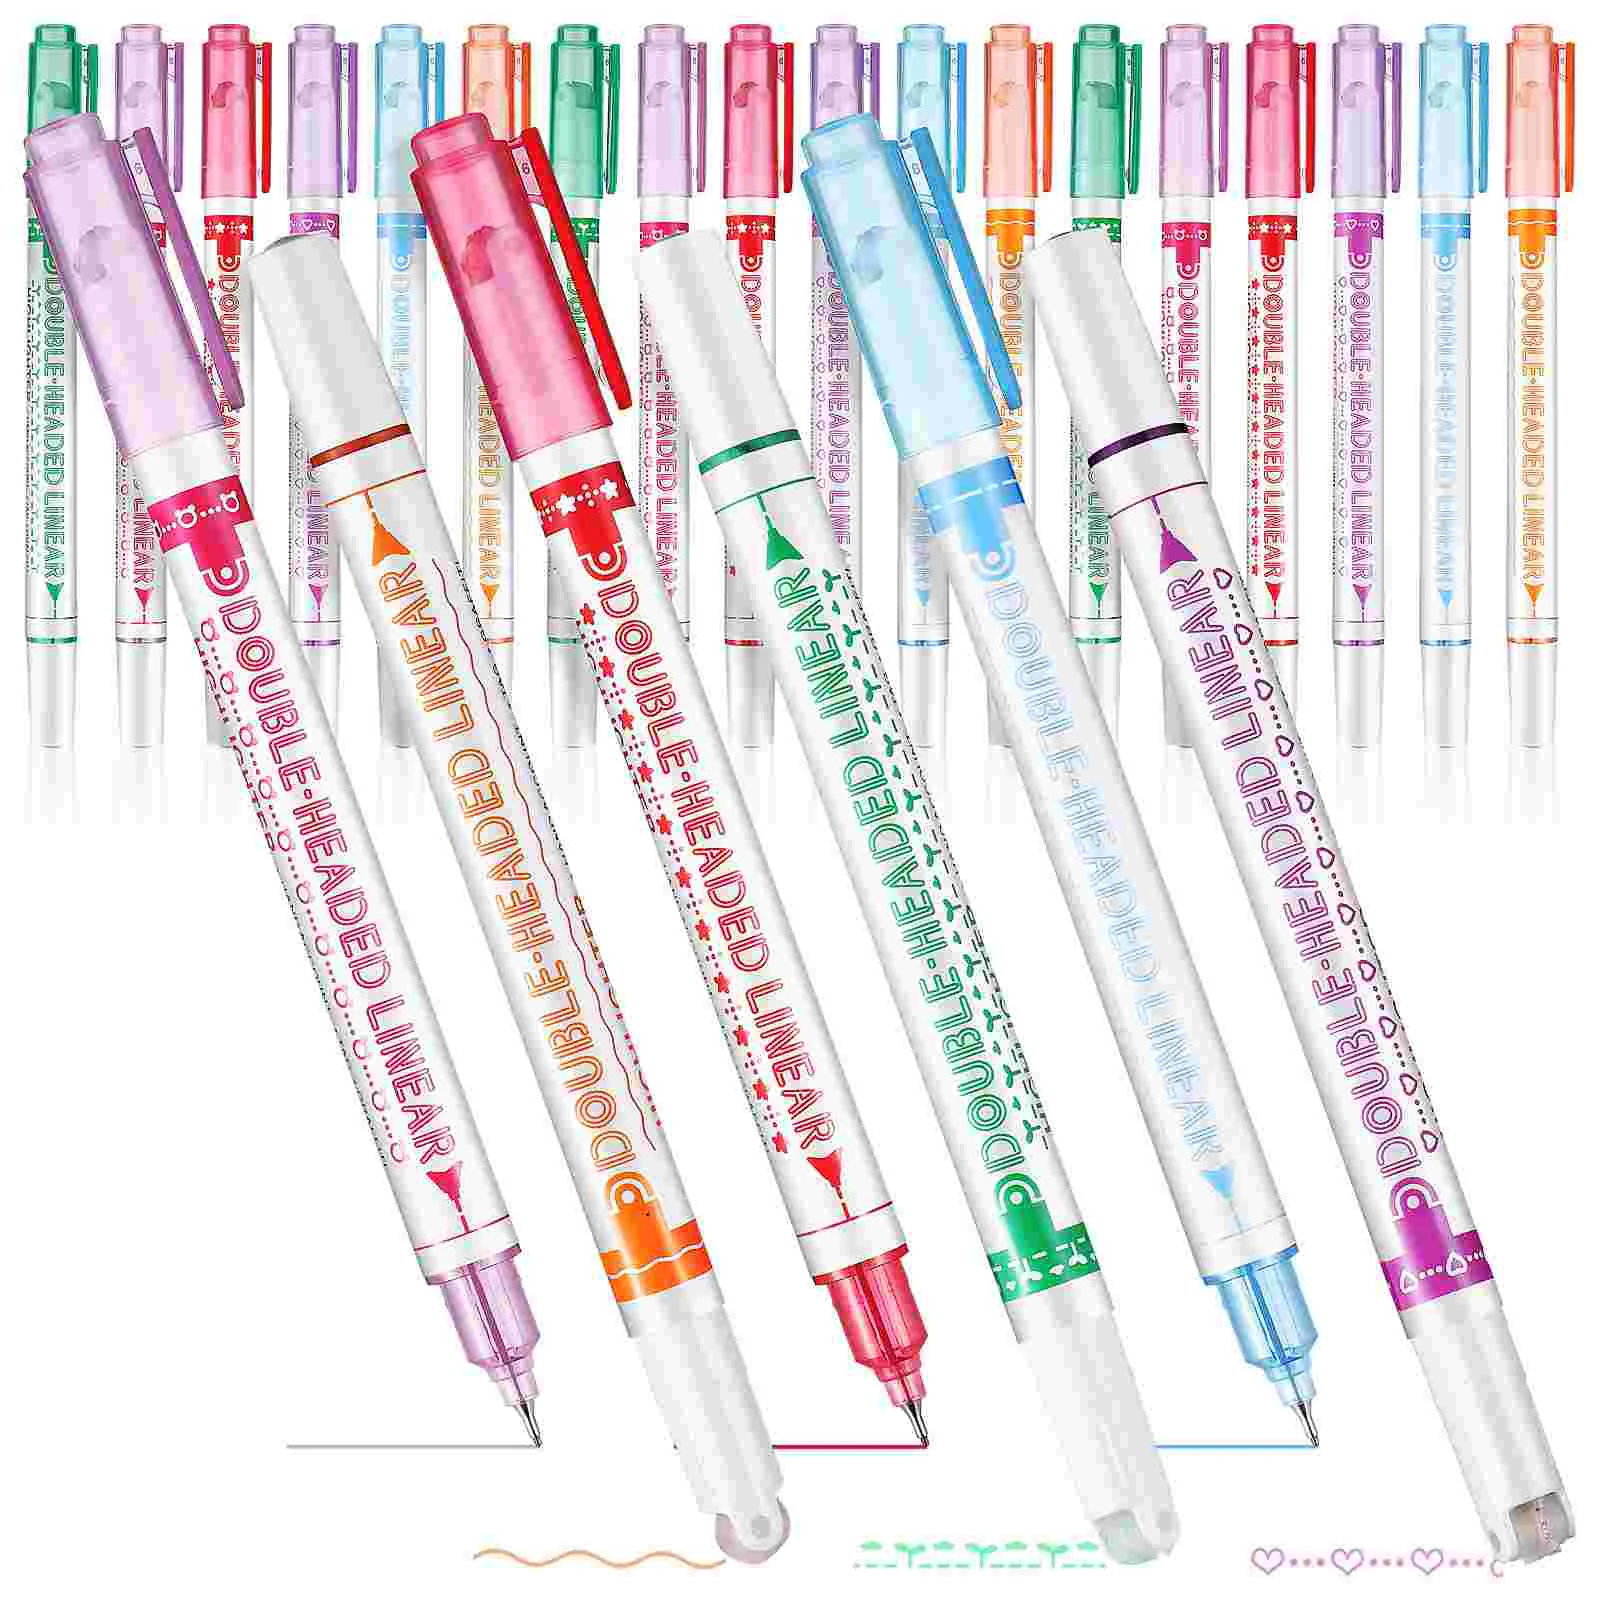 

24 шт. двухсторонний хайлайтер, детские ручки для рукоделия, стильные бумажные хайлайтеры разных цветов, пластиковый набор для учеников